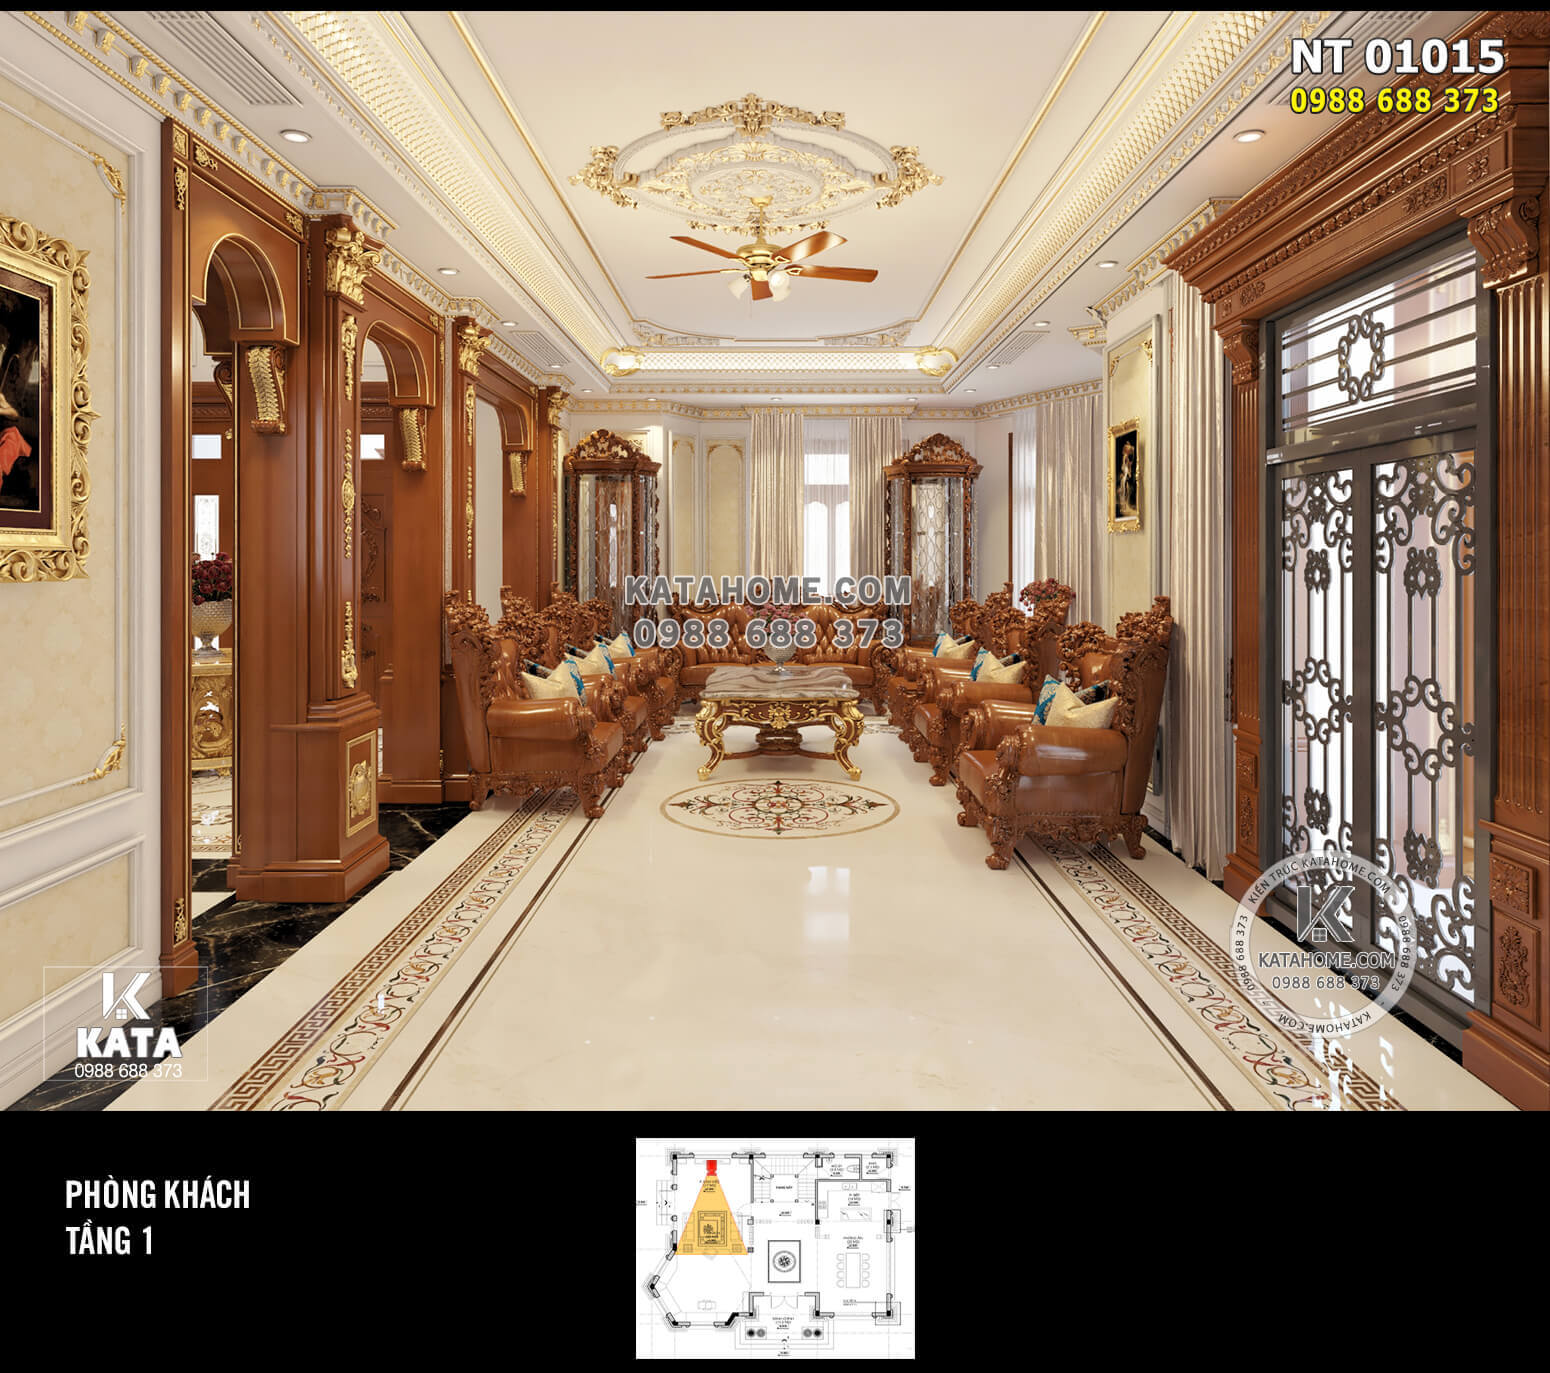 Thiết kế nội thất tân cổ điển đẹp gỗ gõ đỏ sang trọng, đẳng cấp: KATA - NT 01015